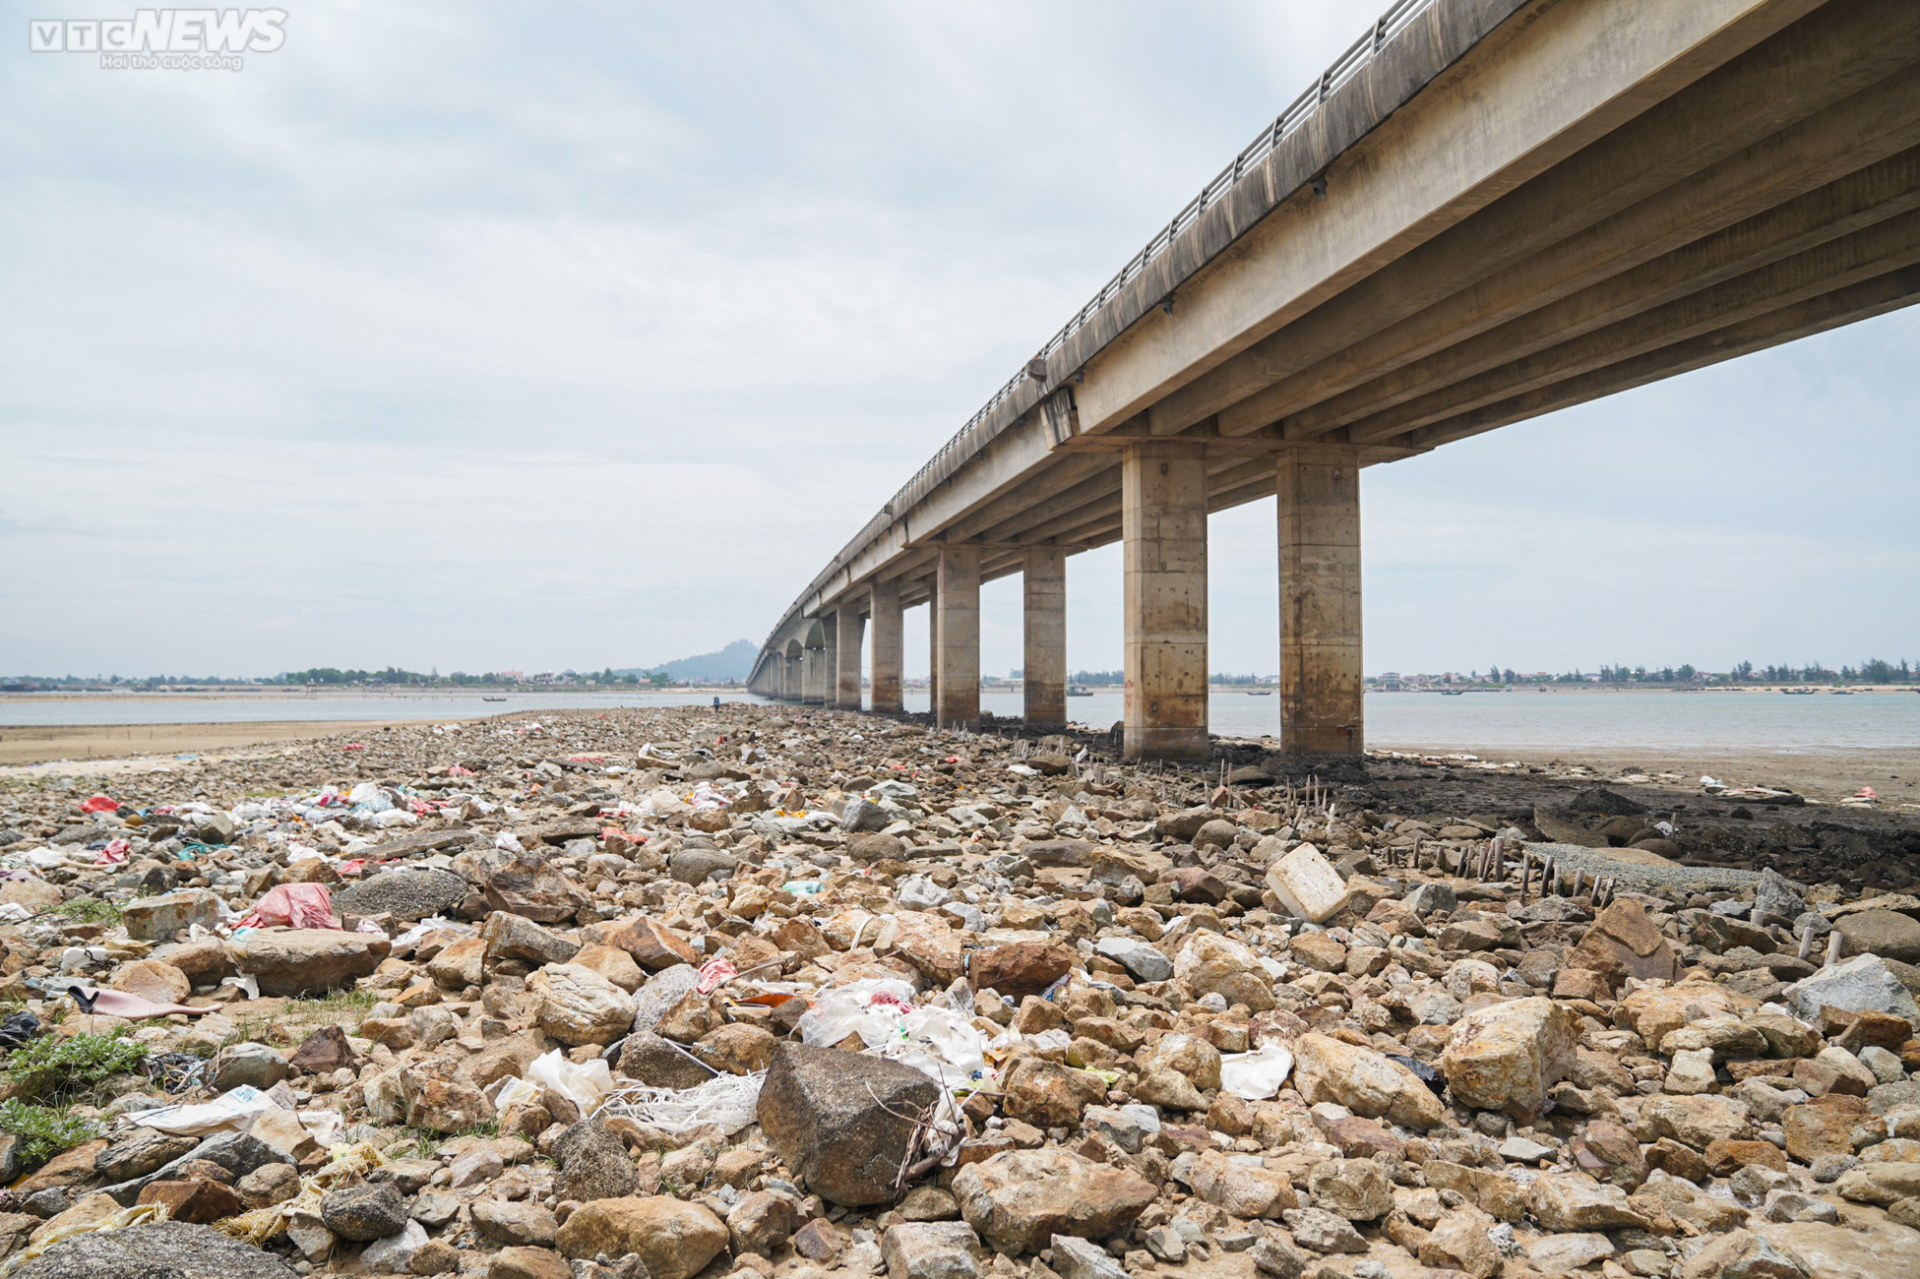 Hàng trăm tấn ‘rác’ bị bỏ rơi dưới chân cầu 500 tỷ đồng - Ảnh 2.